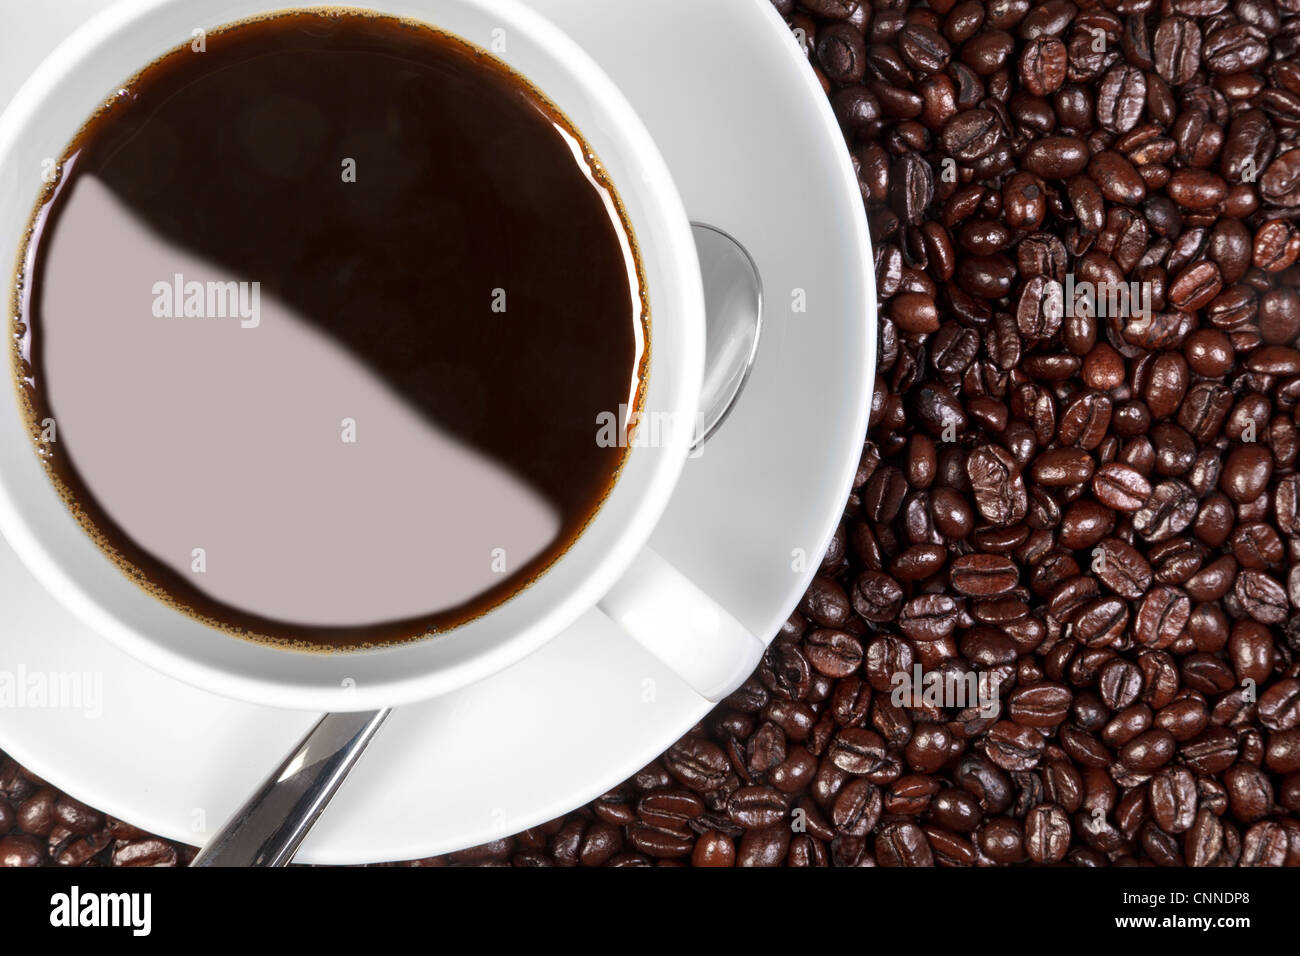 Obenliegende Foto von einer Tasse Kaffee sitzen auf frisch gerösteten Arabica und Robusta-Kaffee Bohnen. Stockfoto